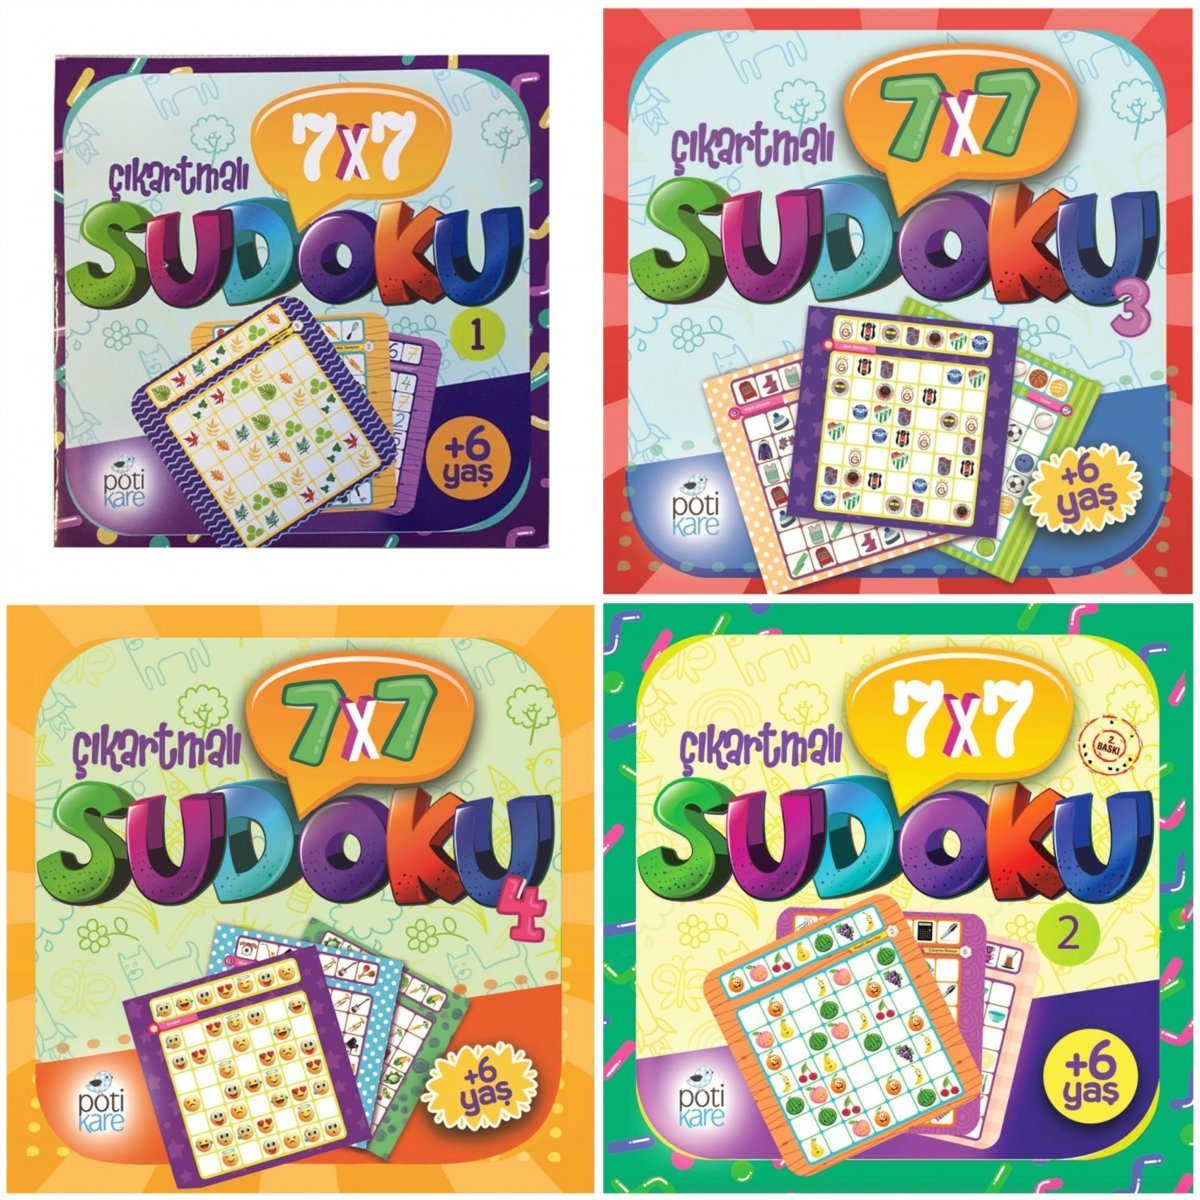 6 yas Sudoku (7X7 Çıkartmalı Sudoku) - 2 Kitap